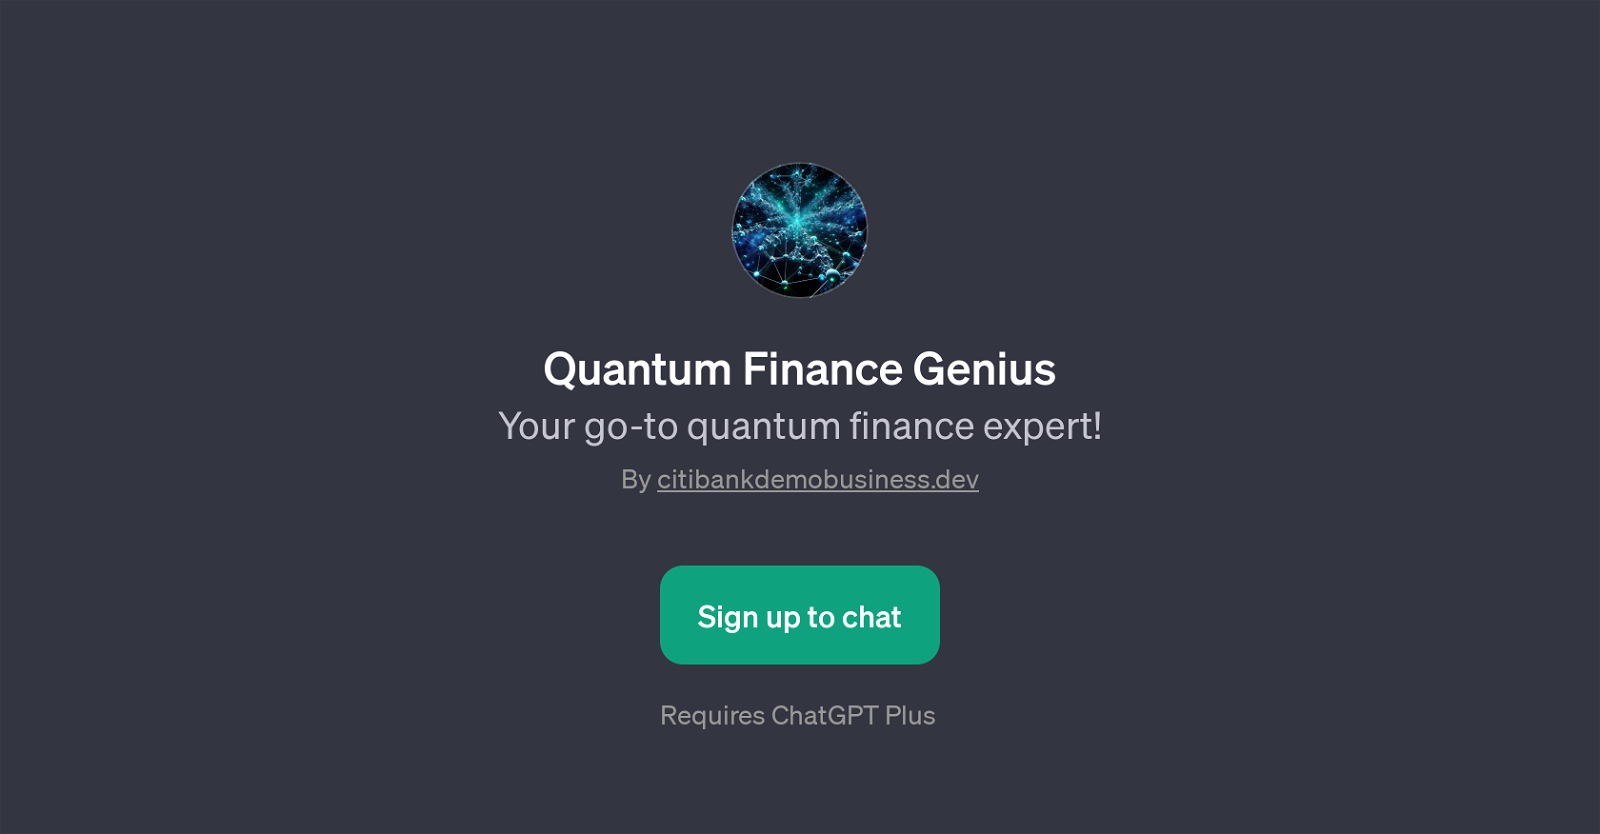 Quantum Finance Genius website